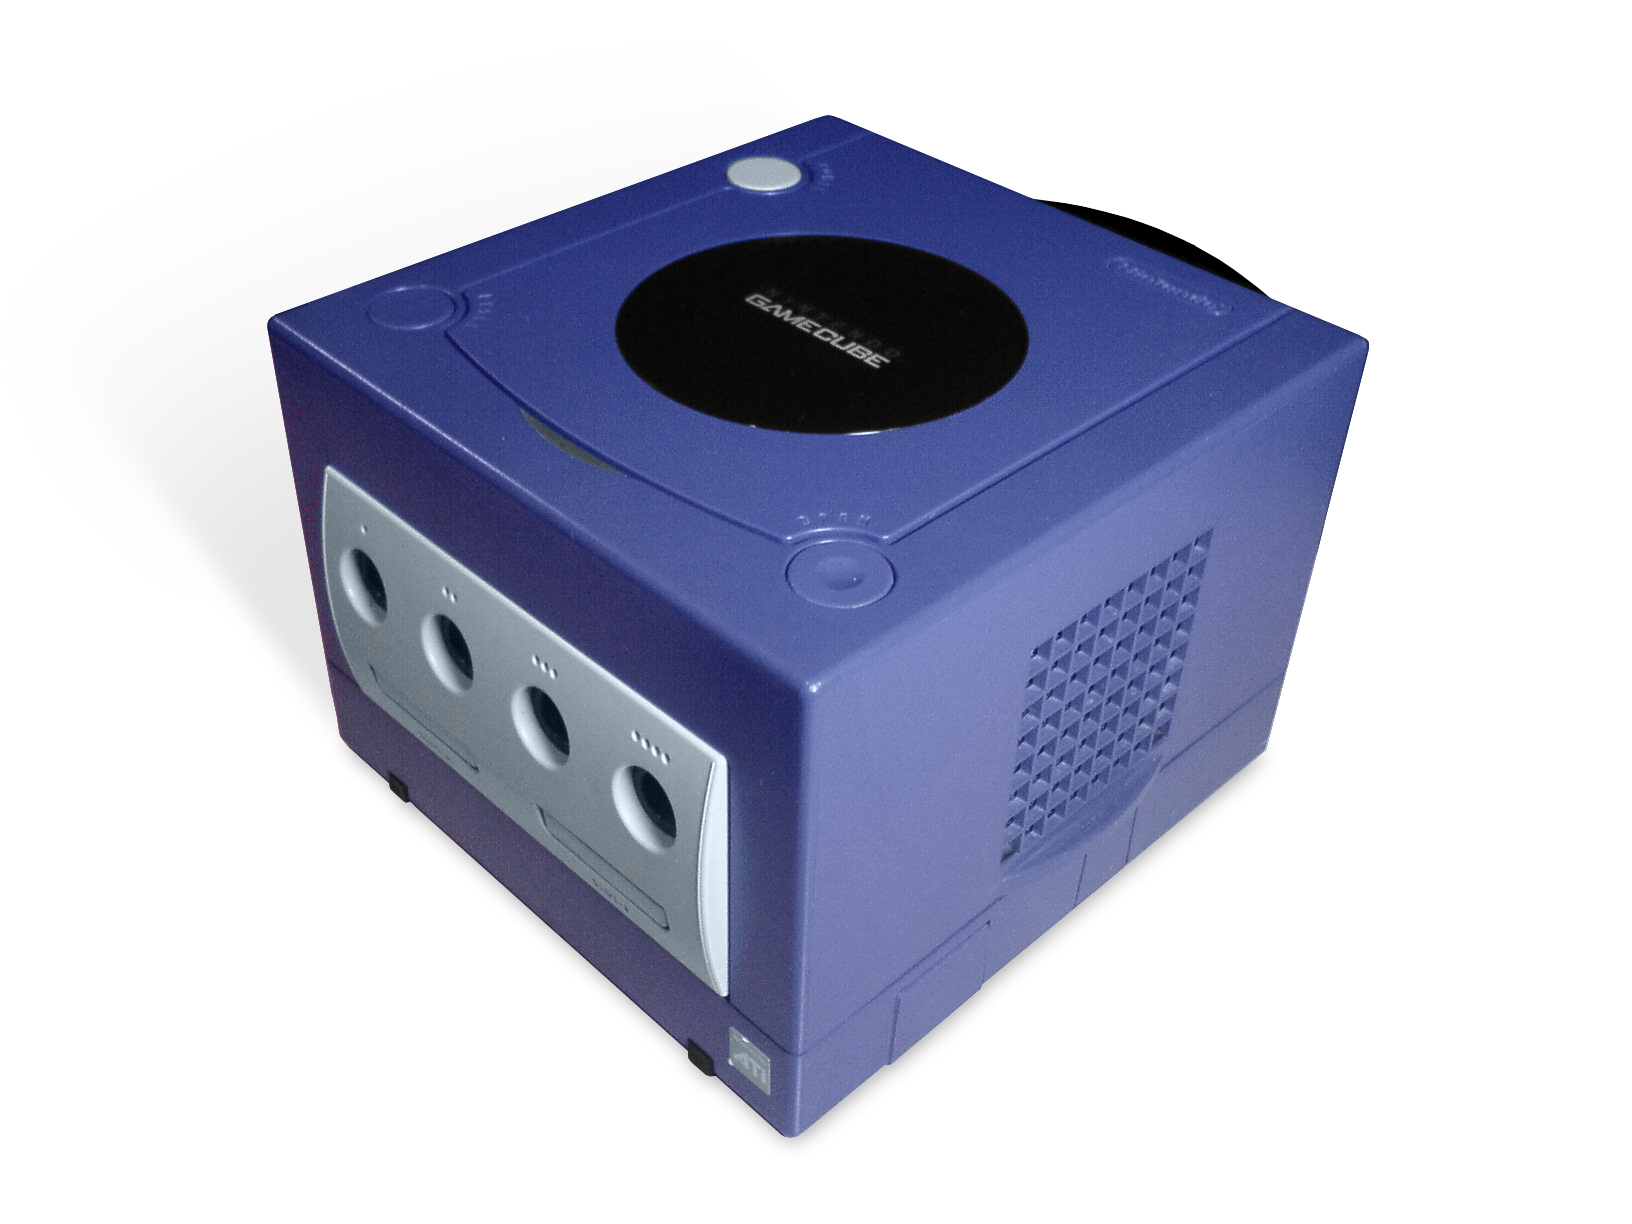 gamecube-console